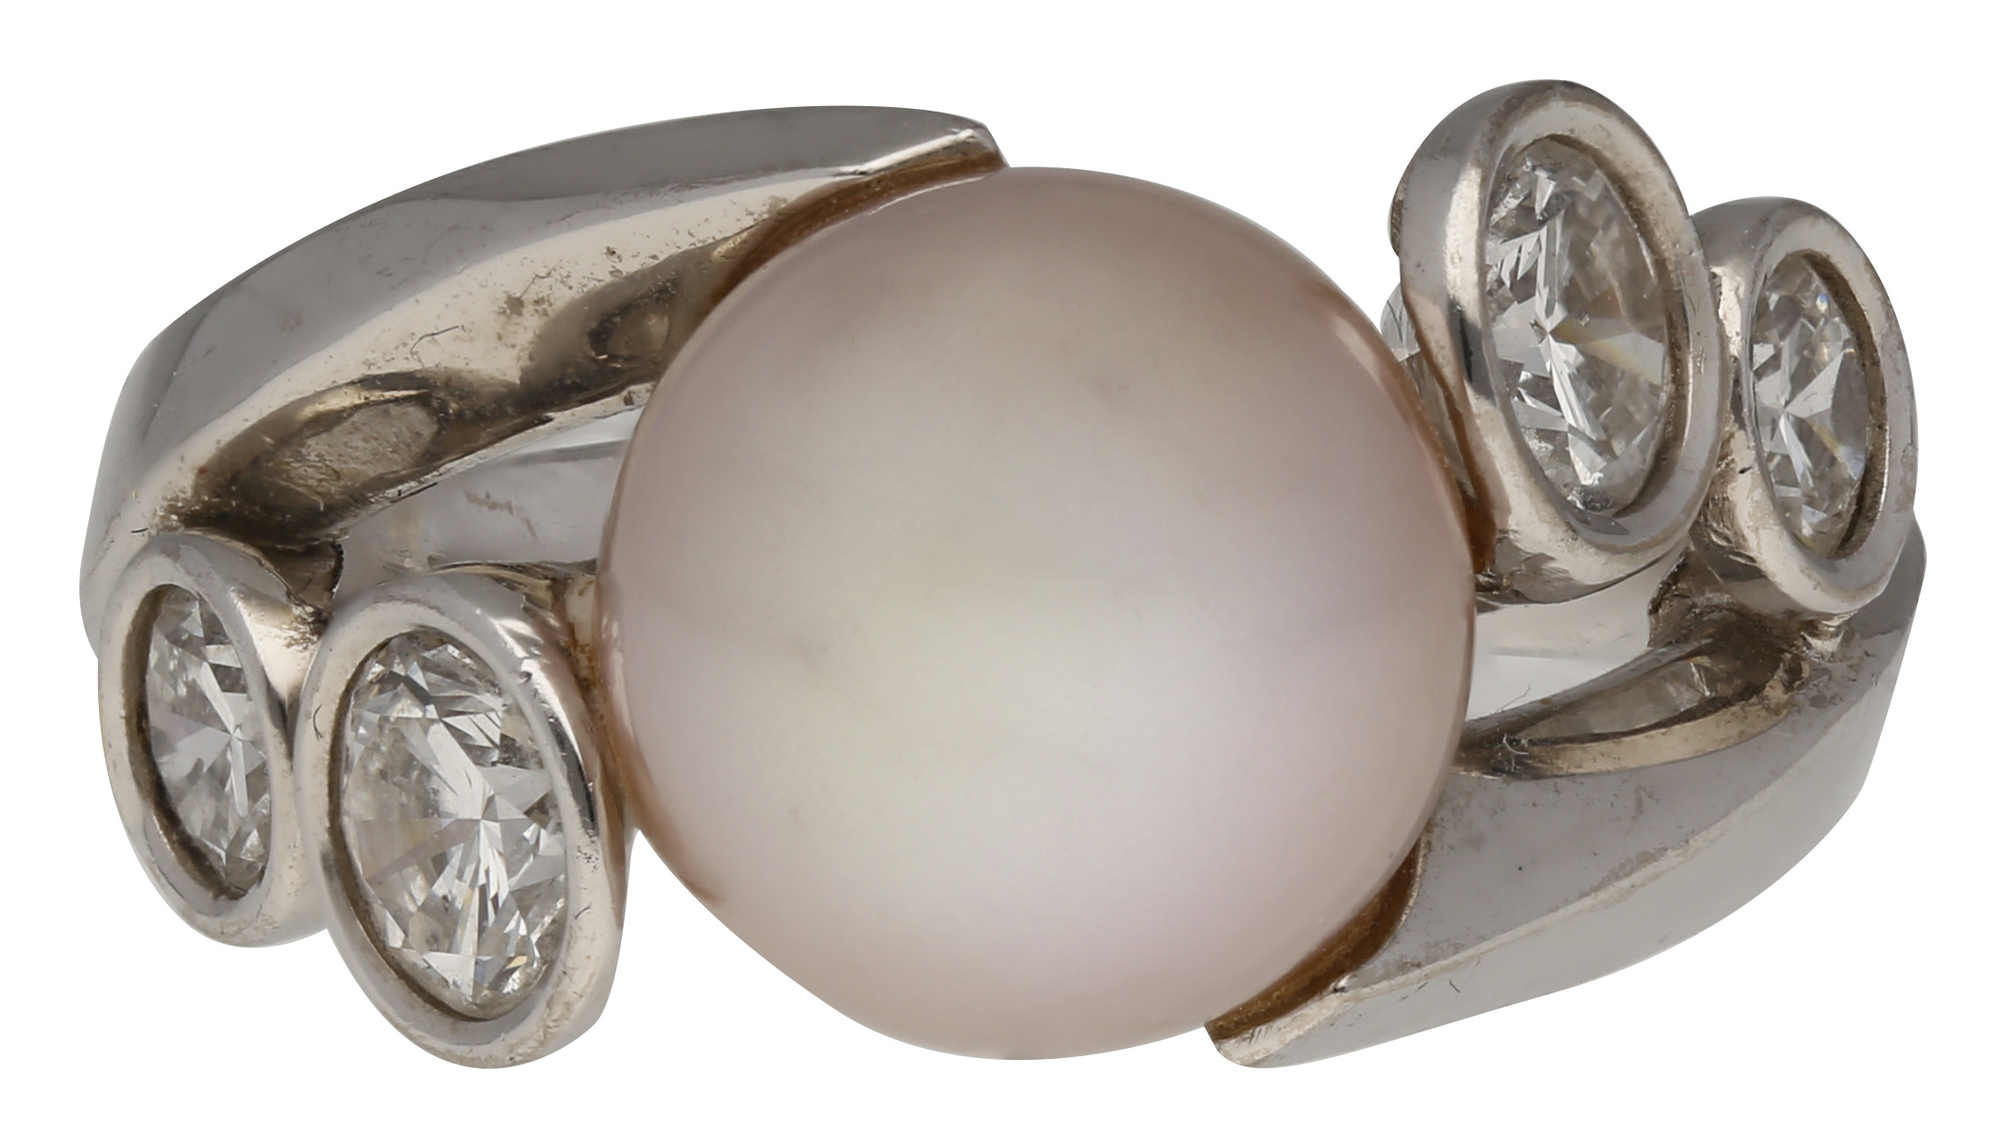 Süsswasser-Zuchtperlen-Set Schöne Perlen Kombination in Weissgold 18K. Feine Selektion aus - Image 2 of 3